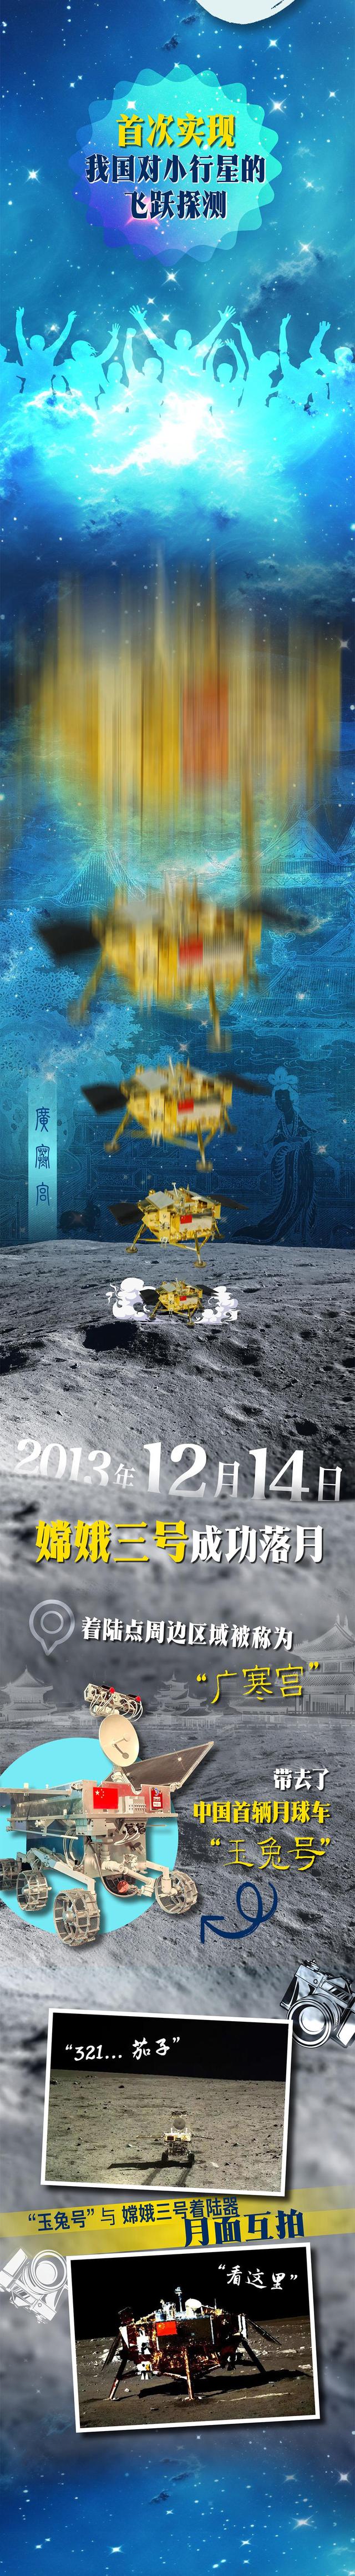 中国航天日丨“嫦娥”揽月记